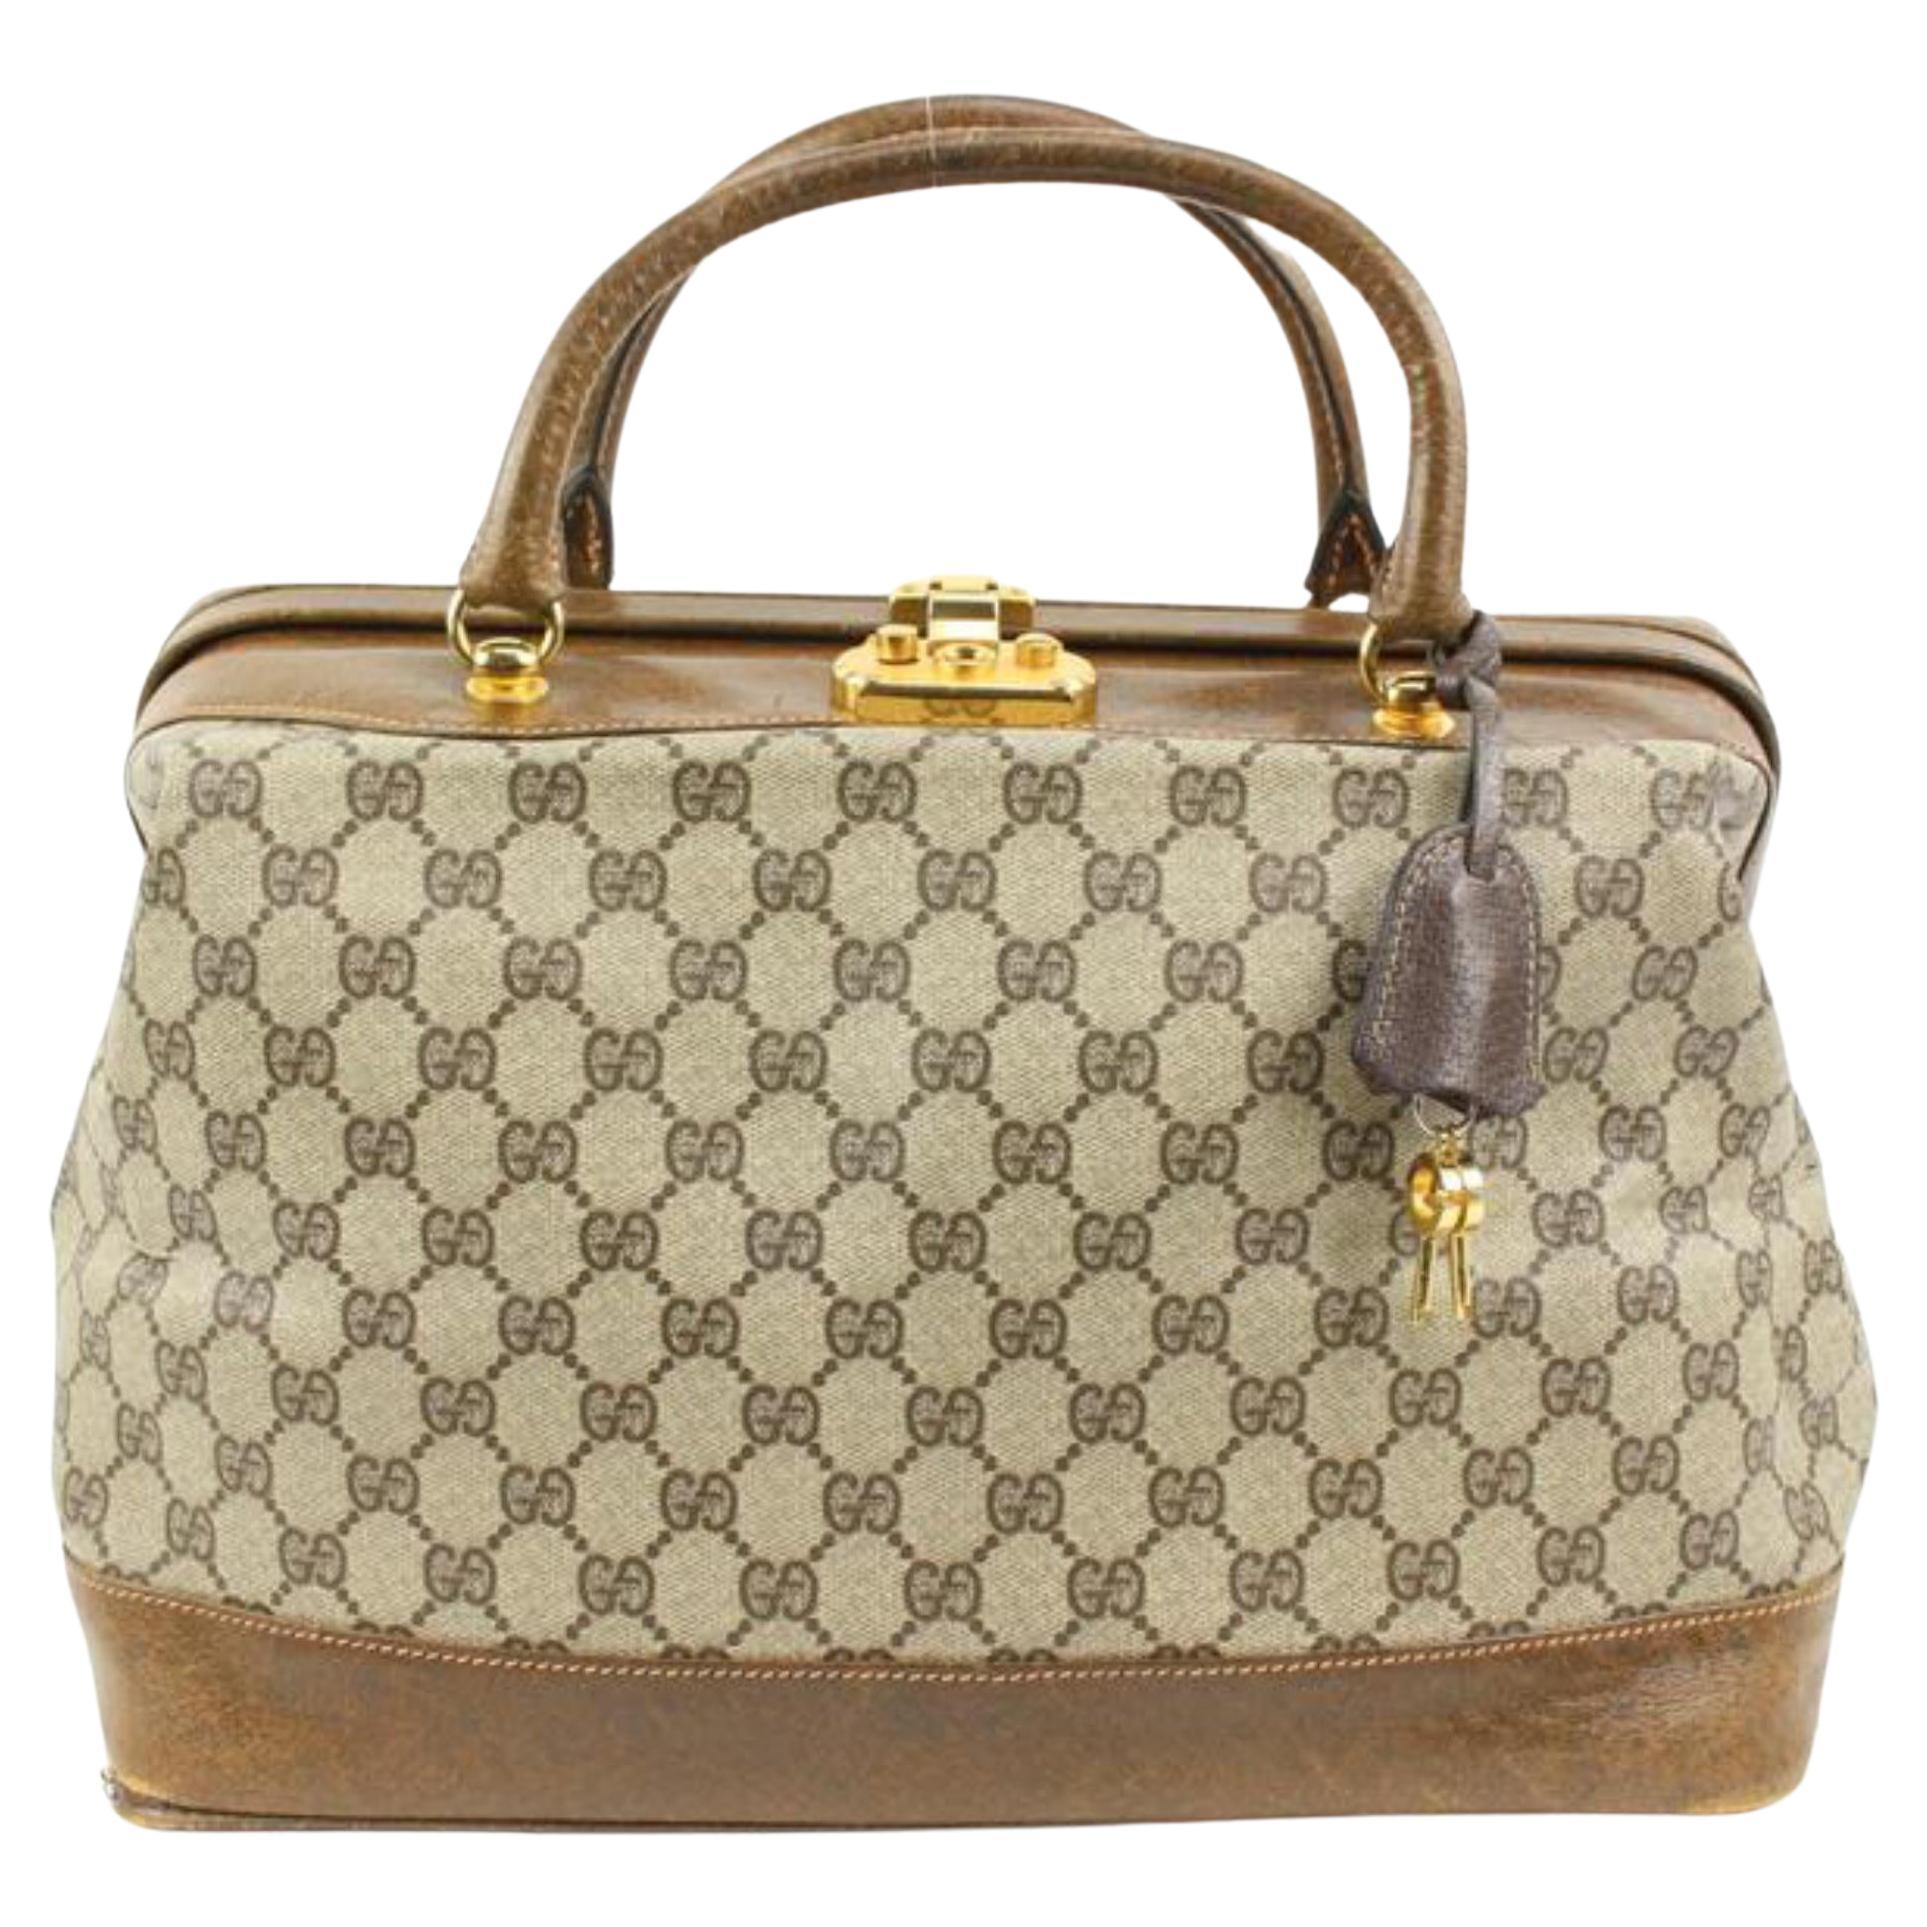 Gucci Vintage Handbag Shoulder Doctor Bag 1950's Italy Leather Kelly Fashion